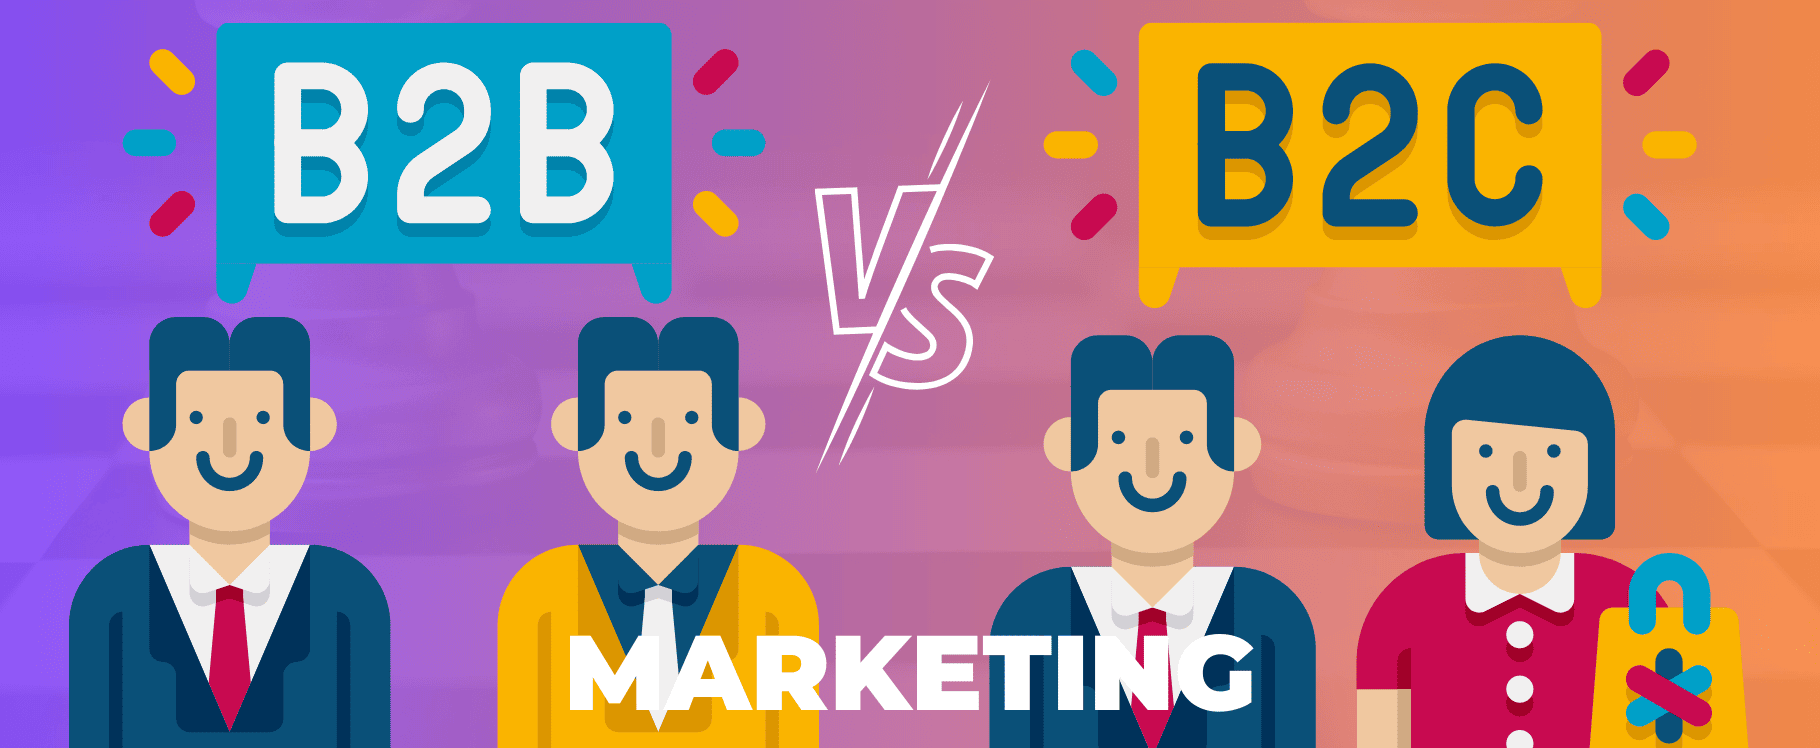 b2b vs. b2c marketing